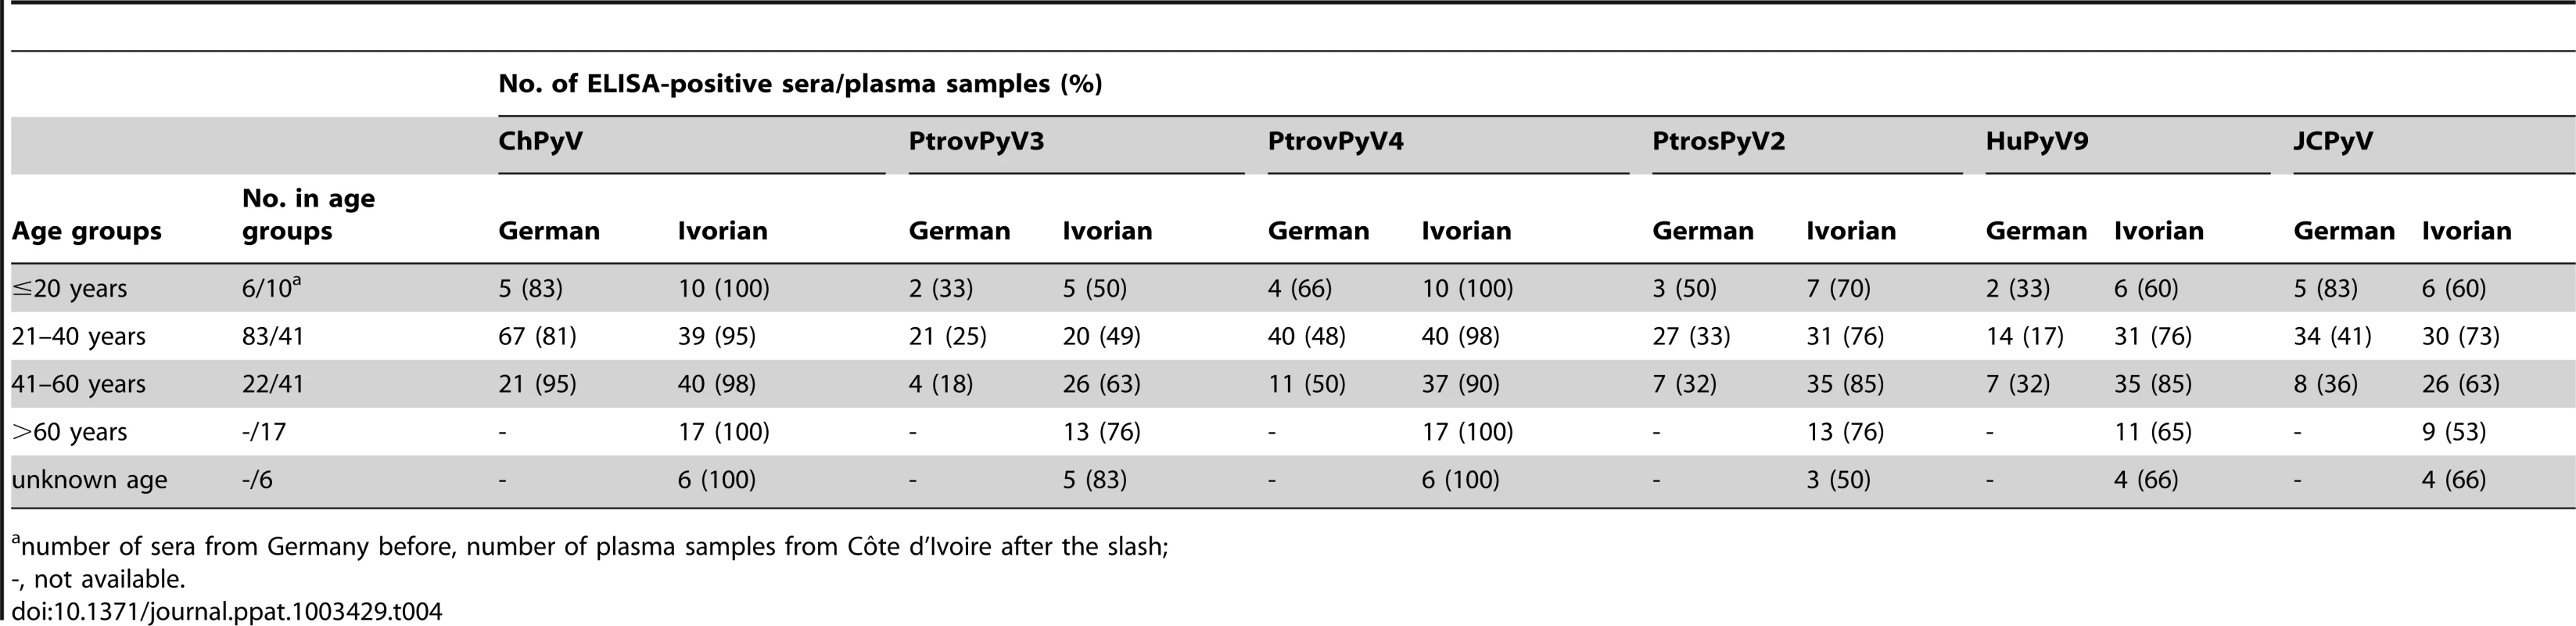 Seroreactivity of German sera and Ivorian plasma samples against polyomaviruses by age group.